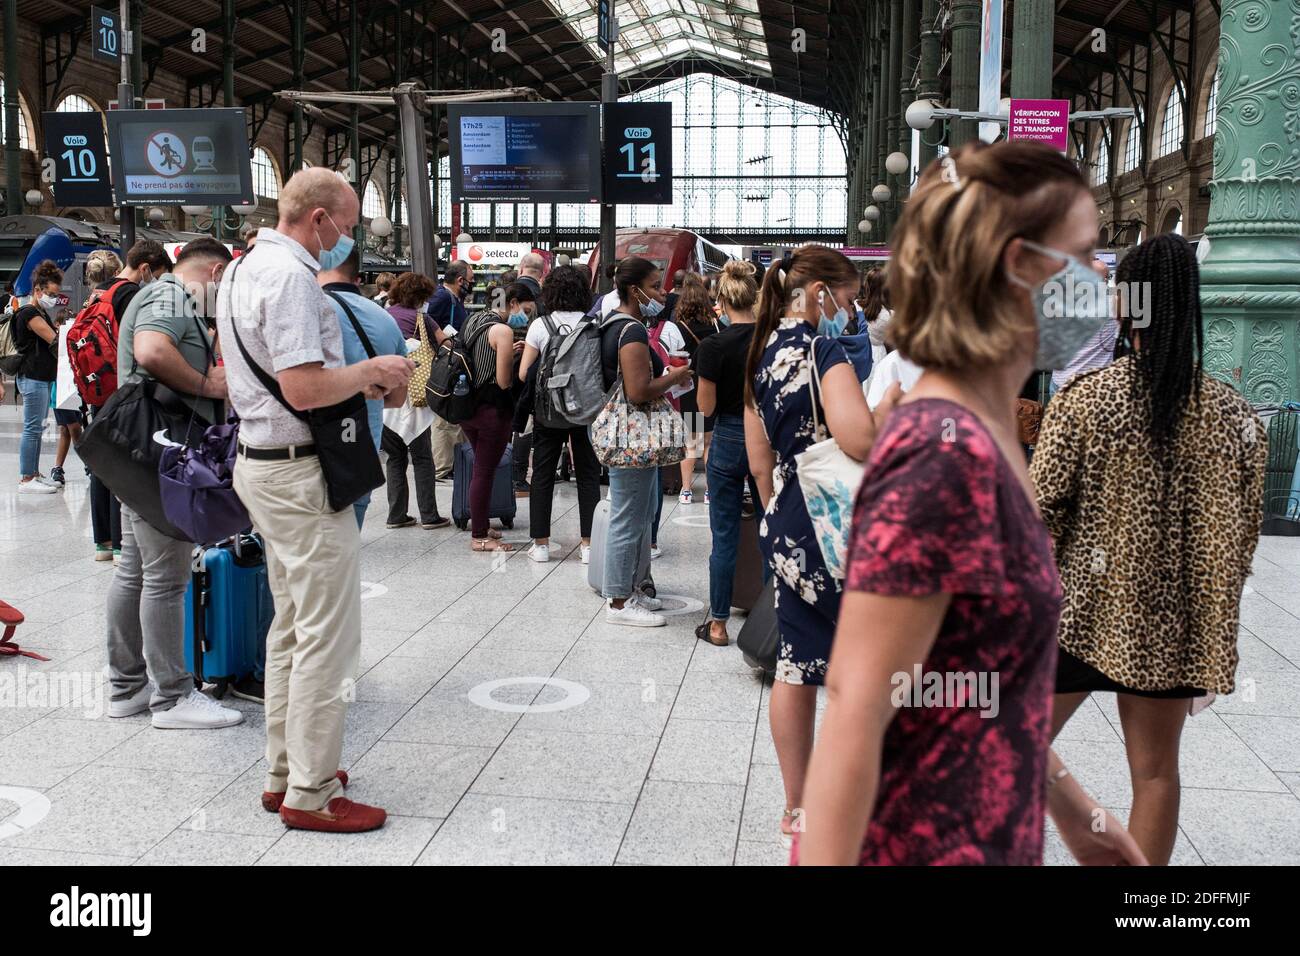 Les gens attendent de prendre le train pour Amsterdam à la gare du Nord, à Paris, France, le 14 août 2020 pendant la pandémie de la COVID-19 (nouveau coronavirus). Photo de Julie Sebadelha/ABACAPRESS.COM Banque D'Images